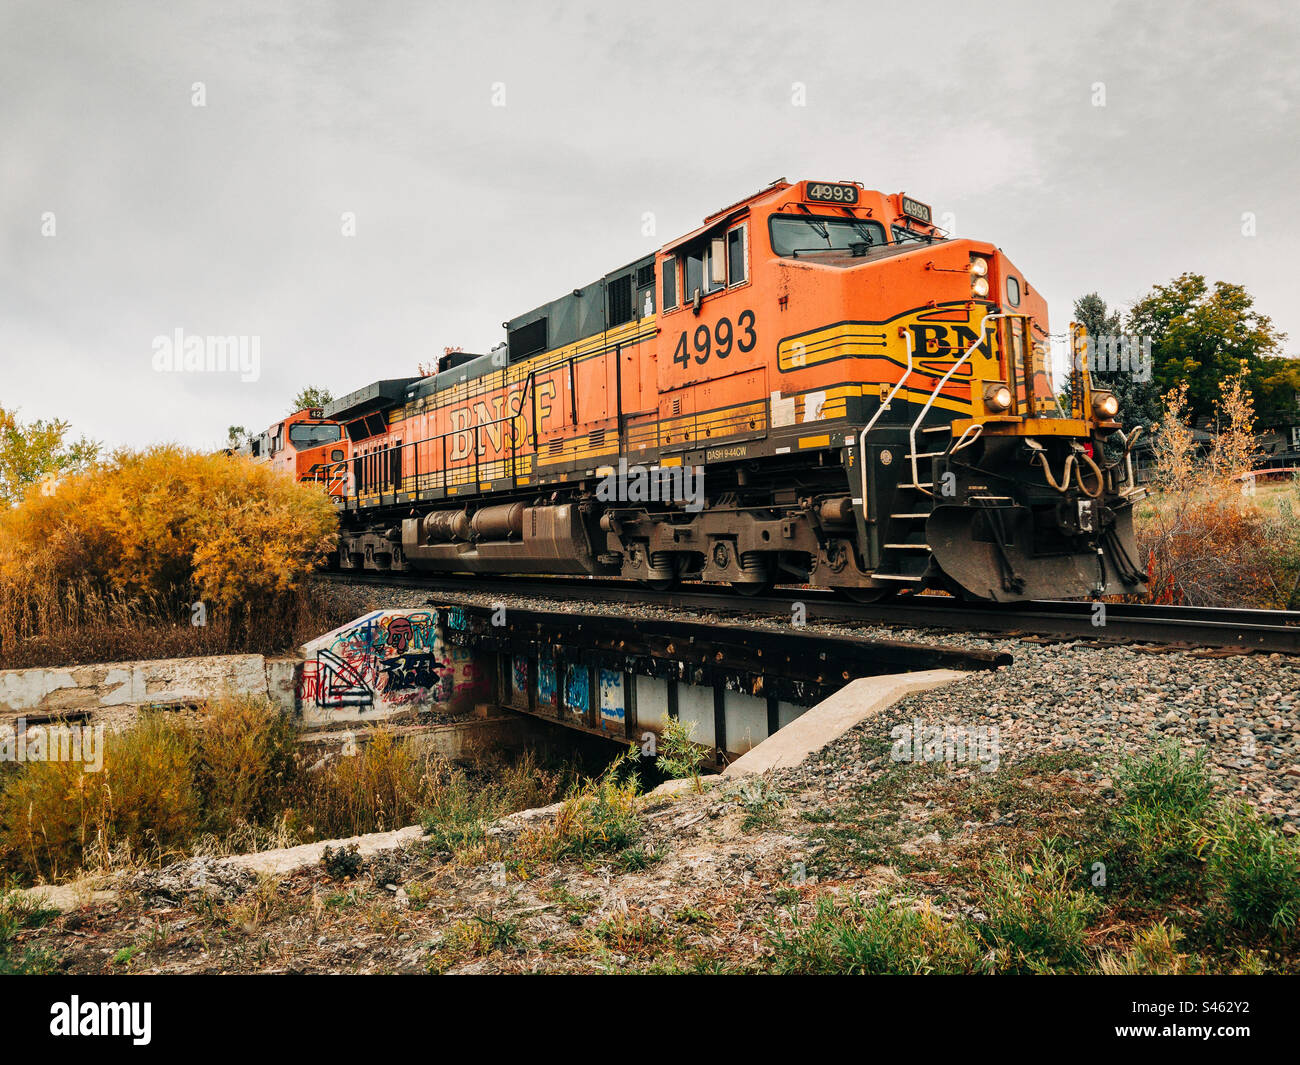 Eine BNSF-Lokomotive zieht einen Güterzug über eine kleine Brücke in herbstlicher Landschaft. Stockfoto